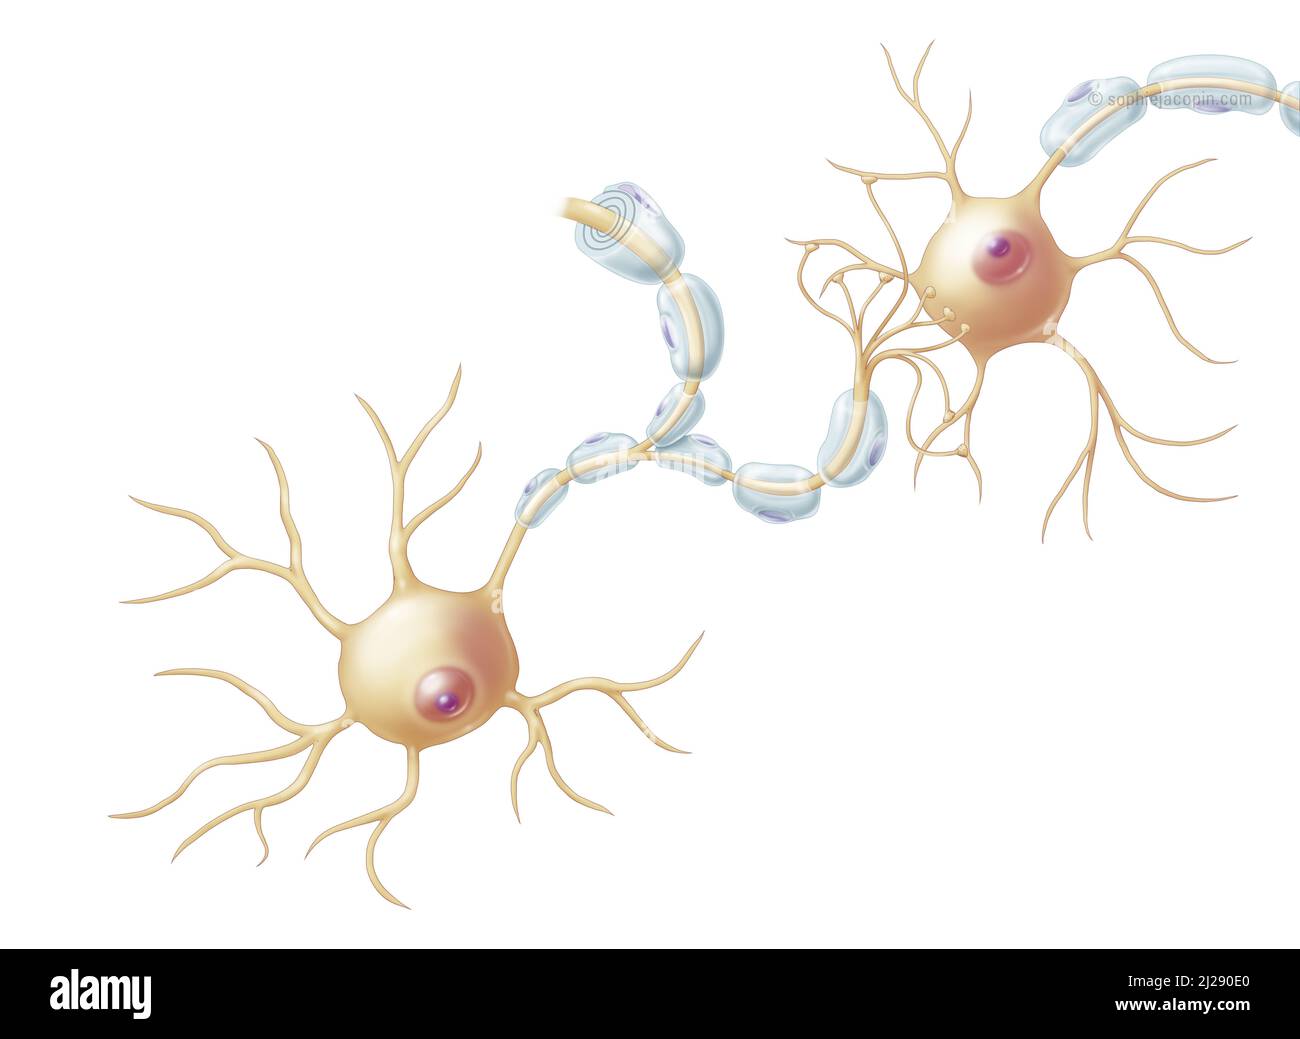 Estructura de las neuronas Foto de stock